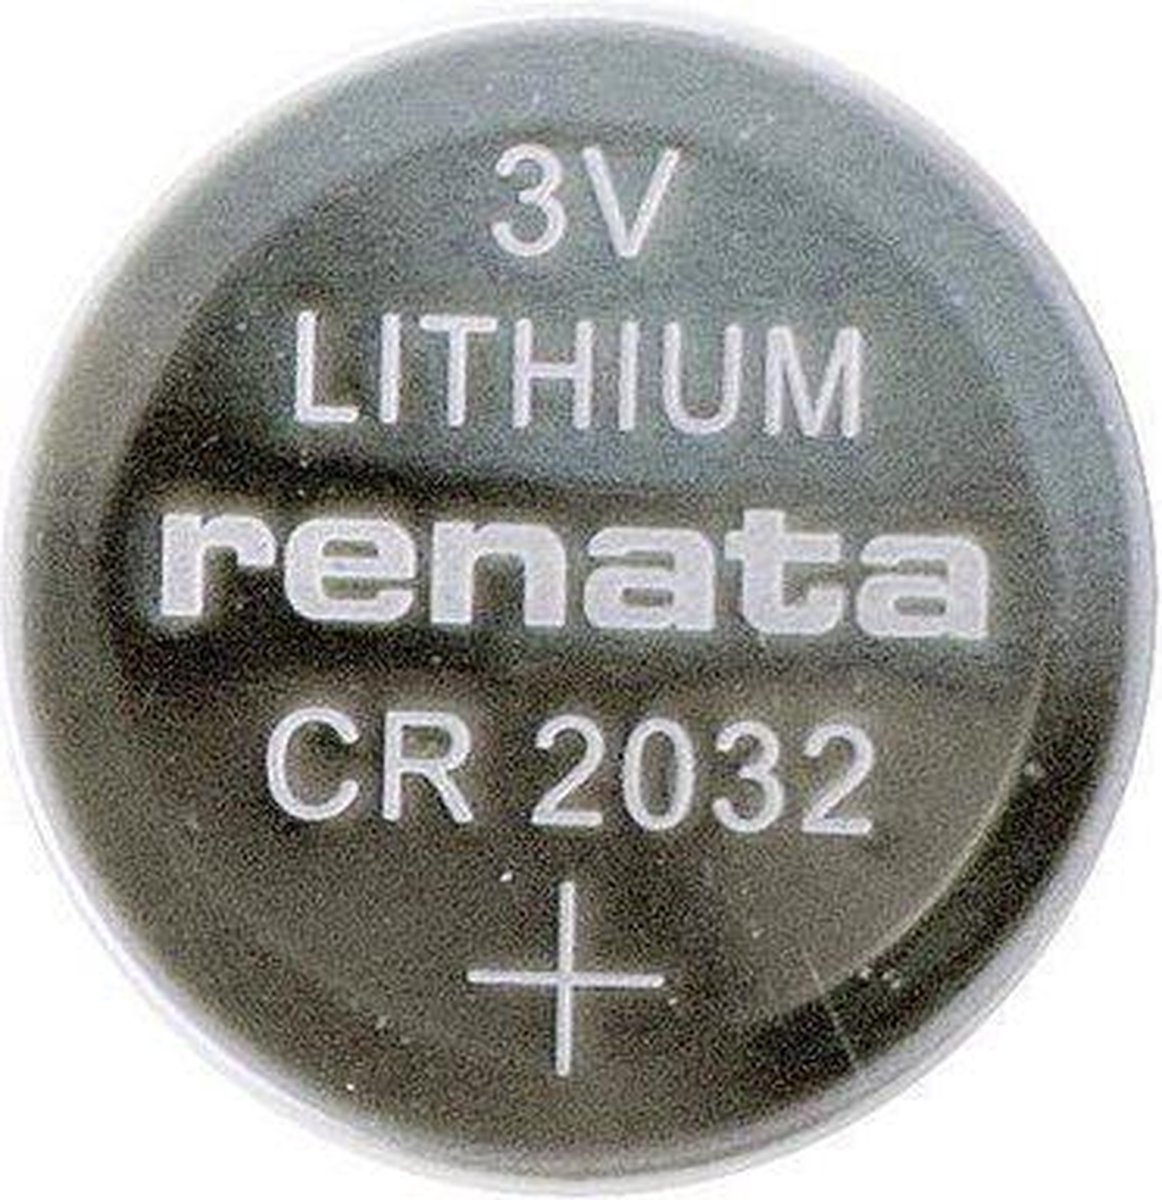 Relags knoopcelbatterij CR 2032, 3V